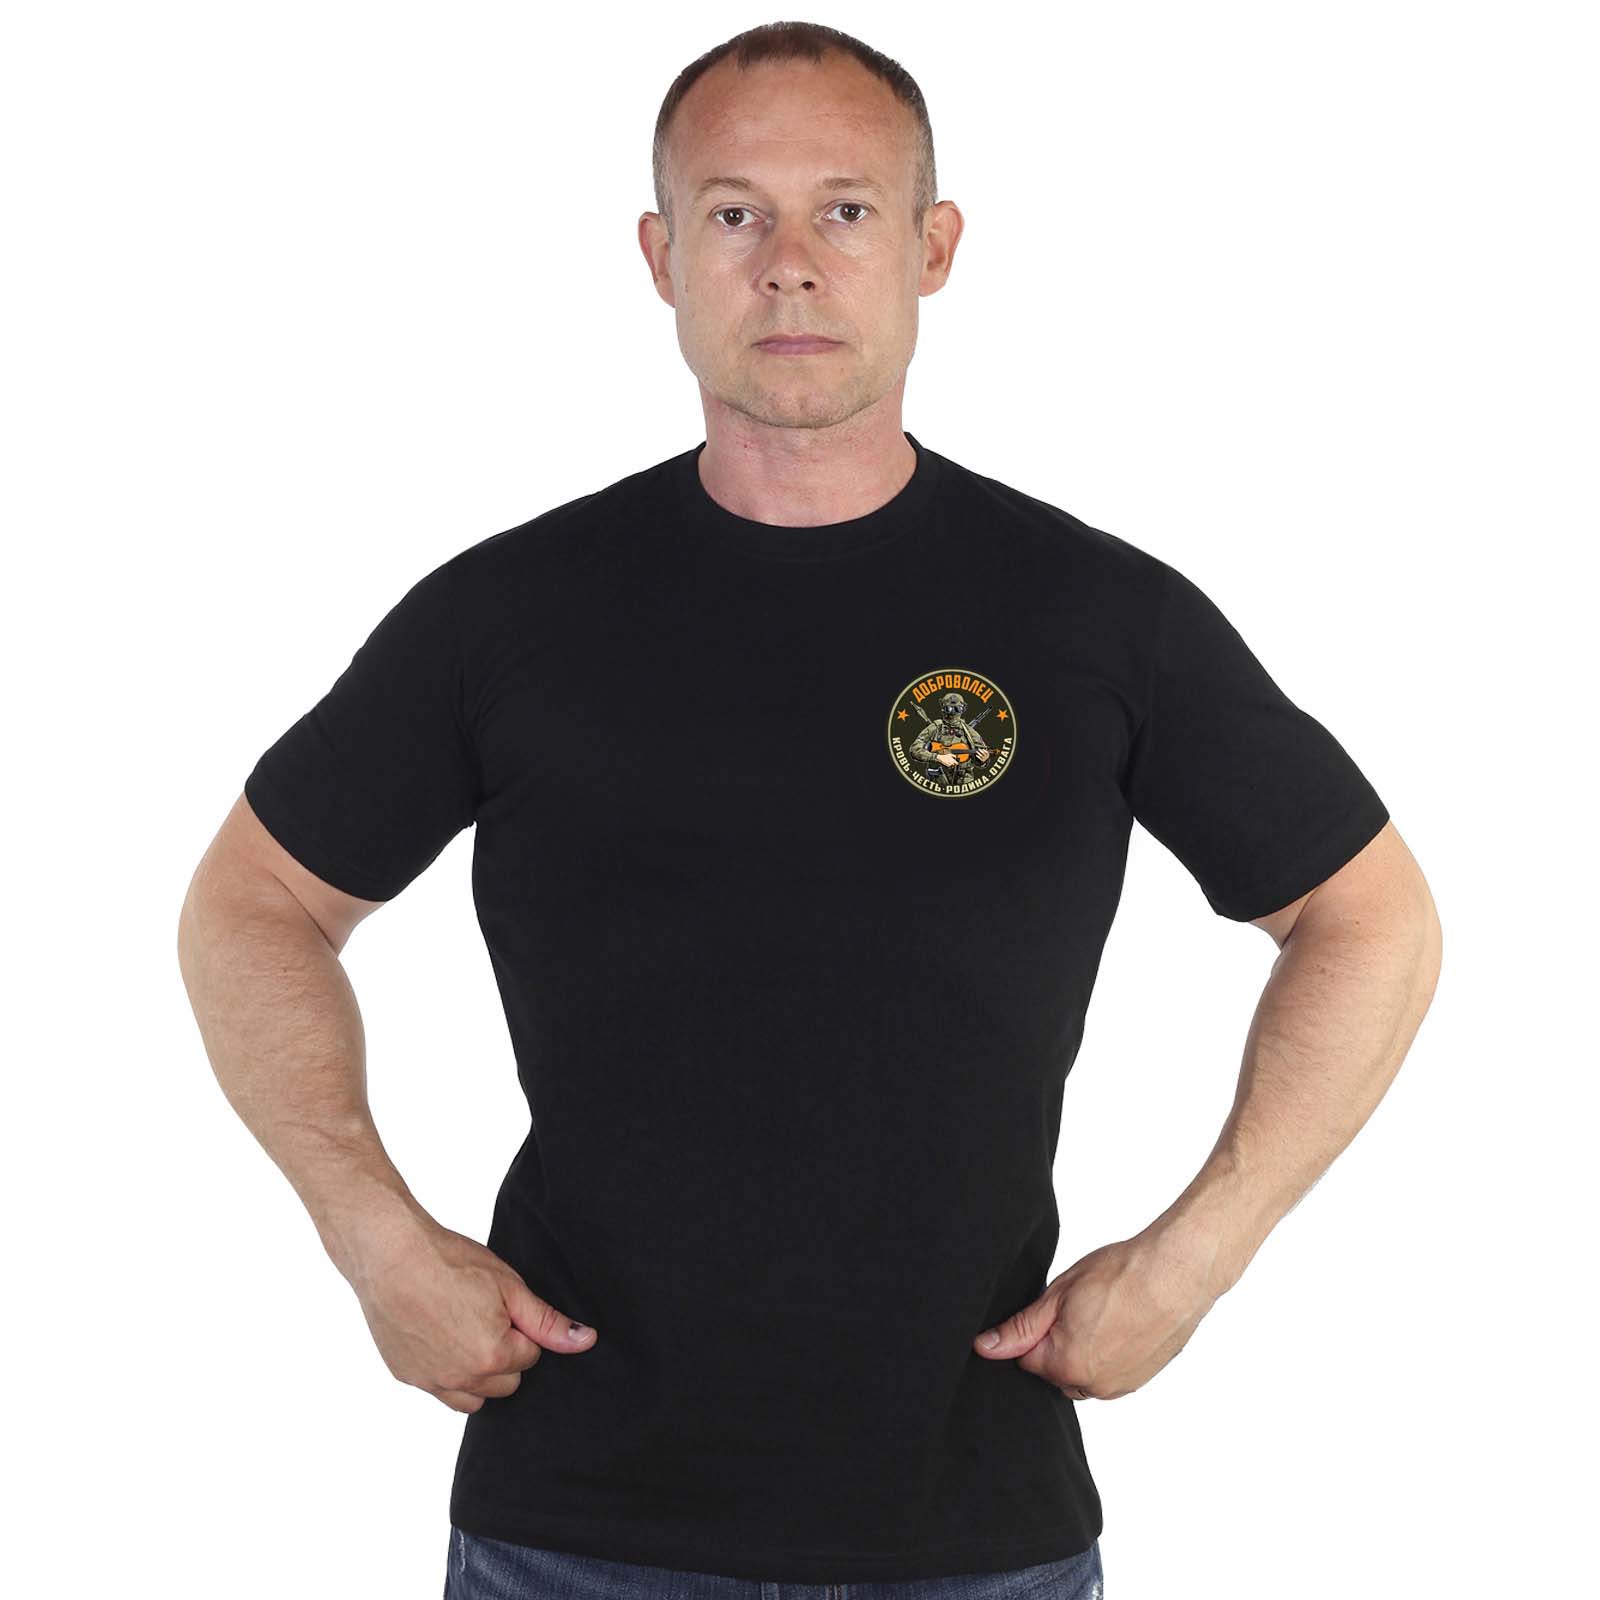 Купить трикотажную черную футболку с термотрансфером Доброволец онлайн